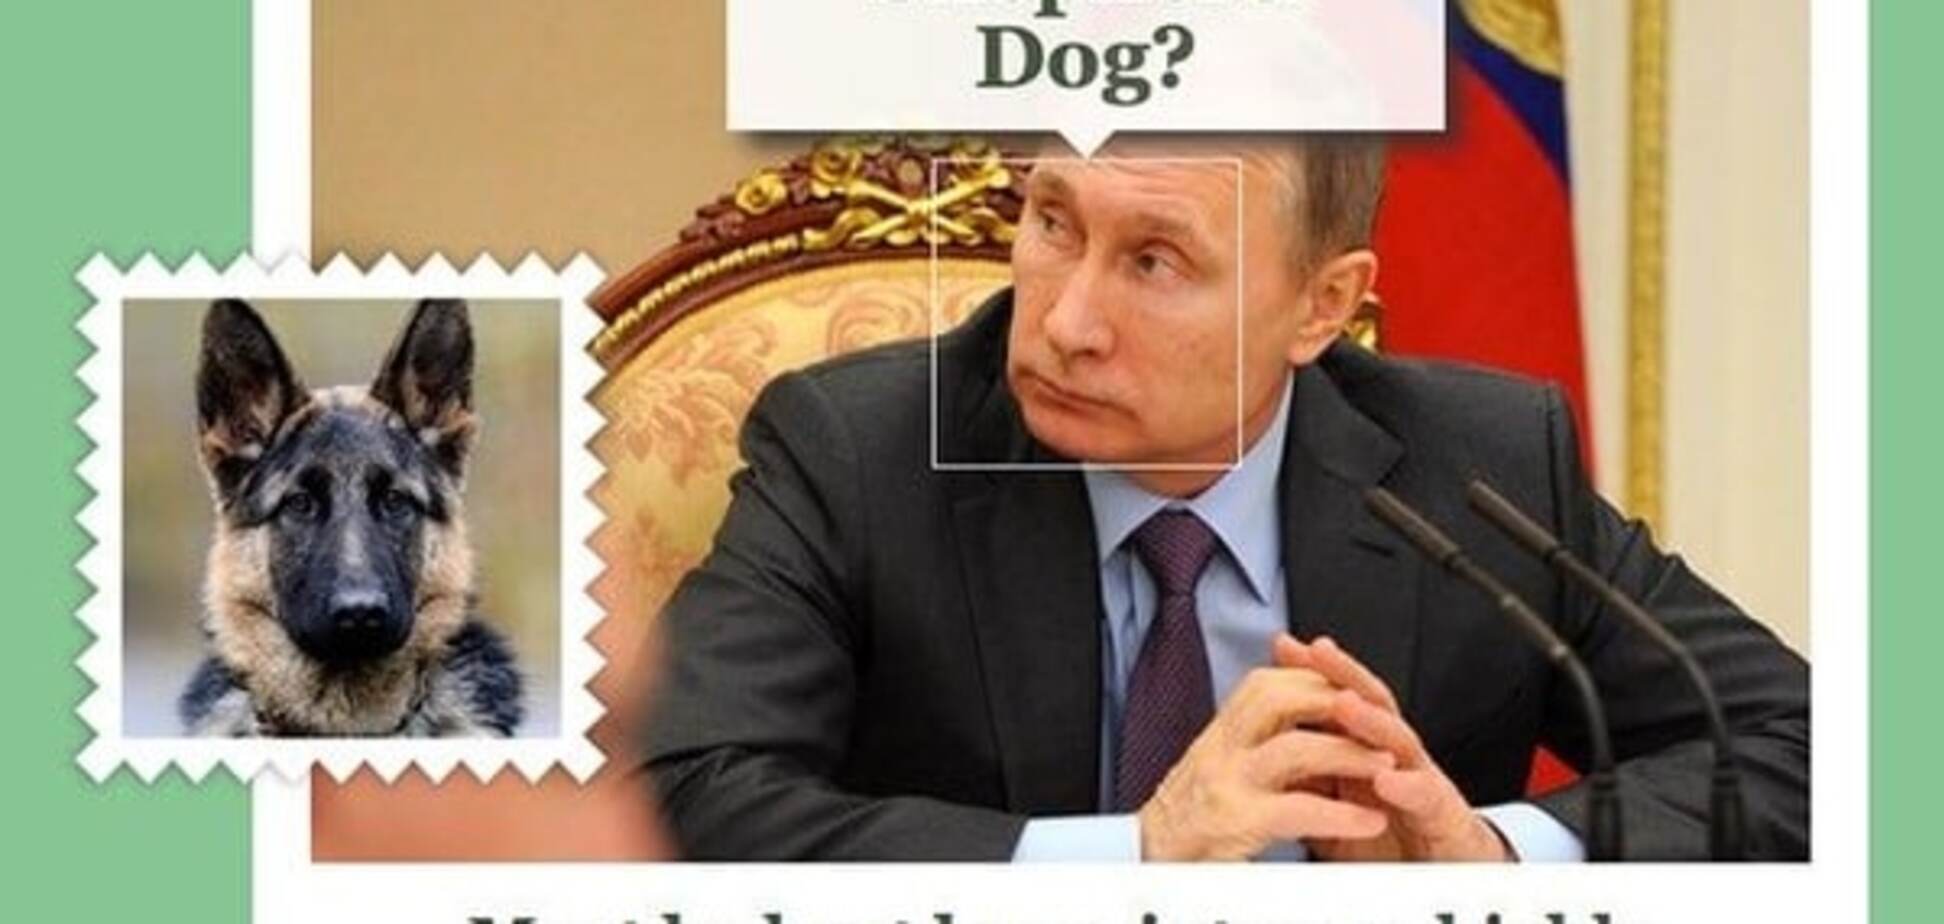 На яких собак схожі світові лідери: від Путіна до Ердогана